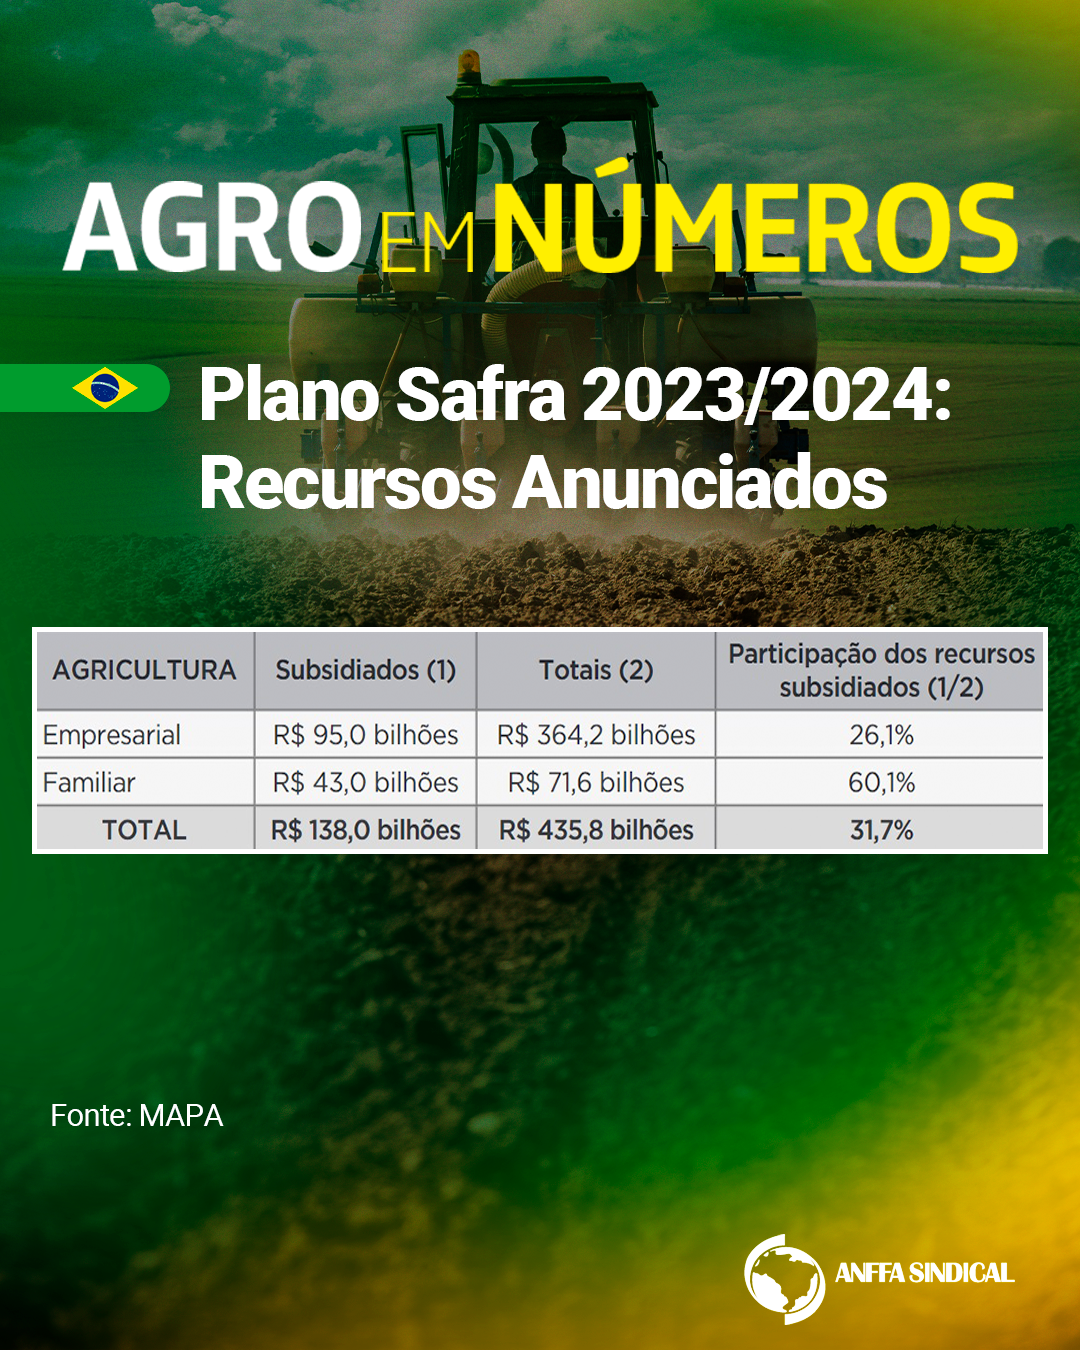 Plano Safra 2023/2024: Recursos Anunciados